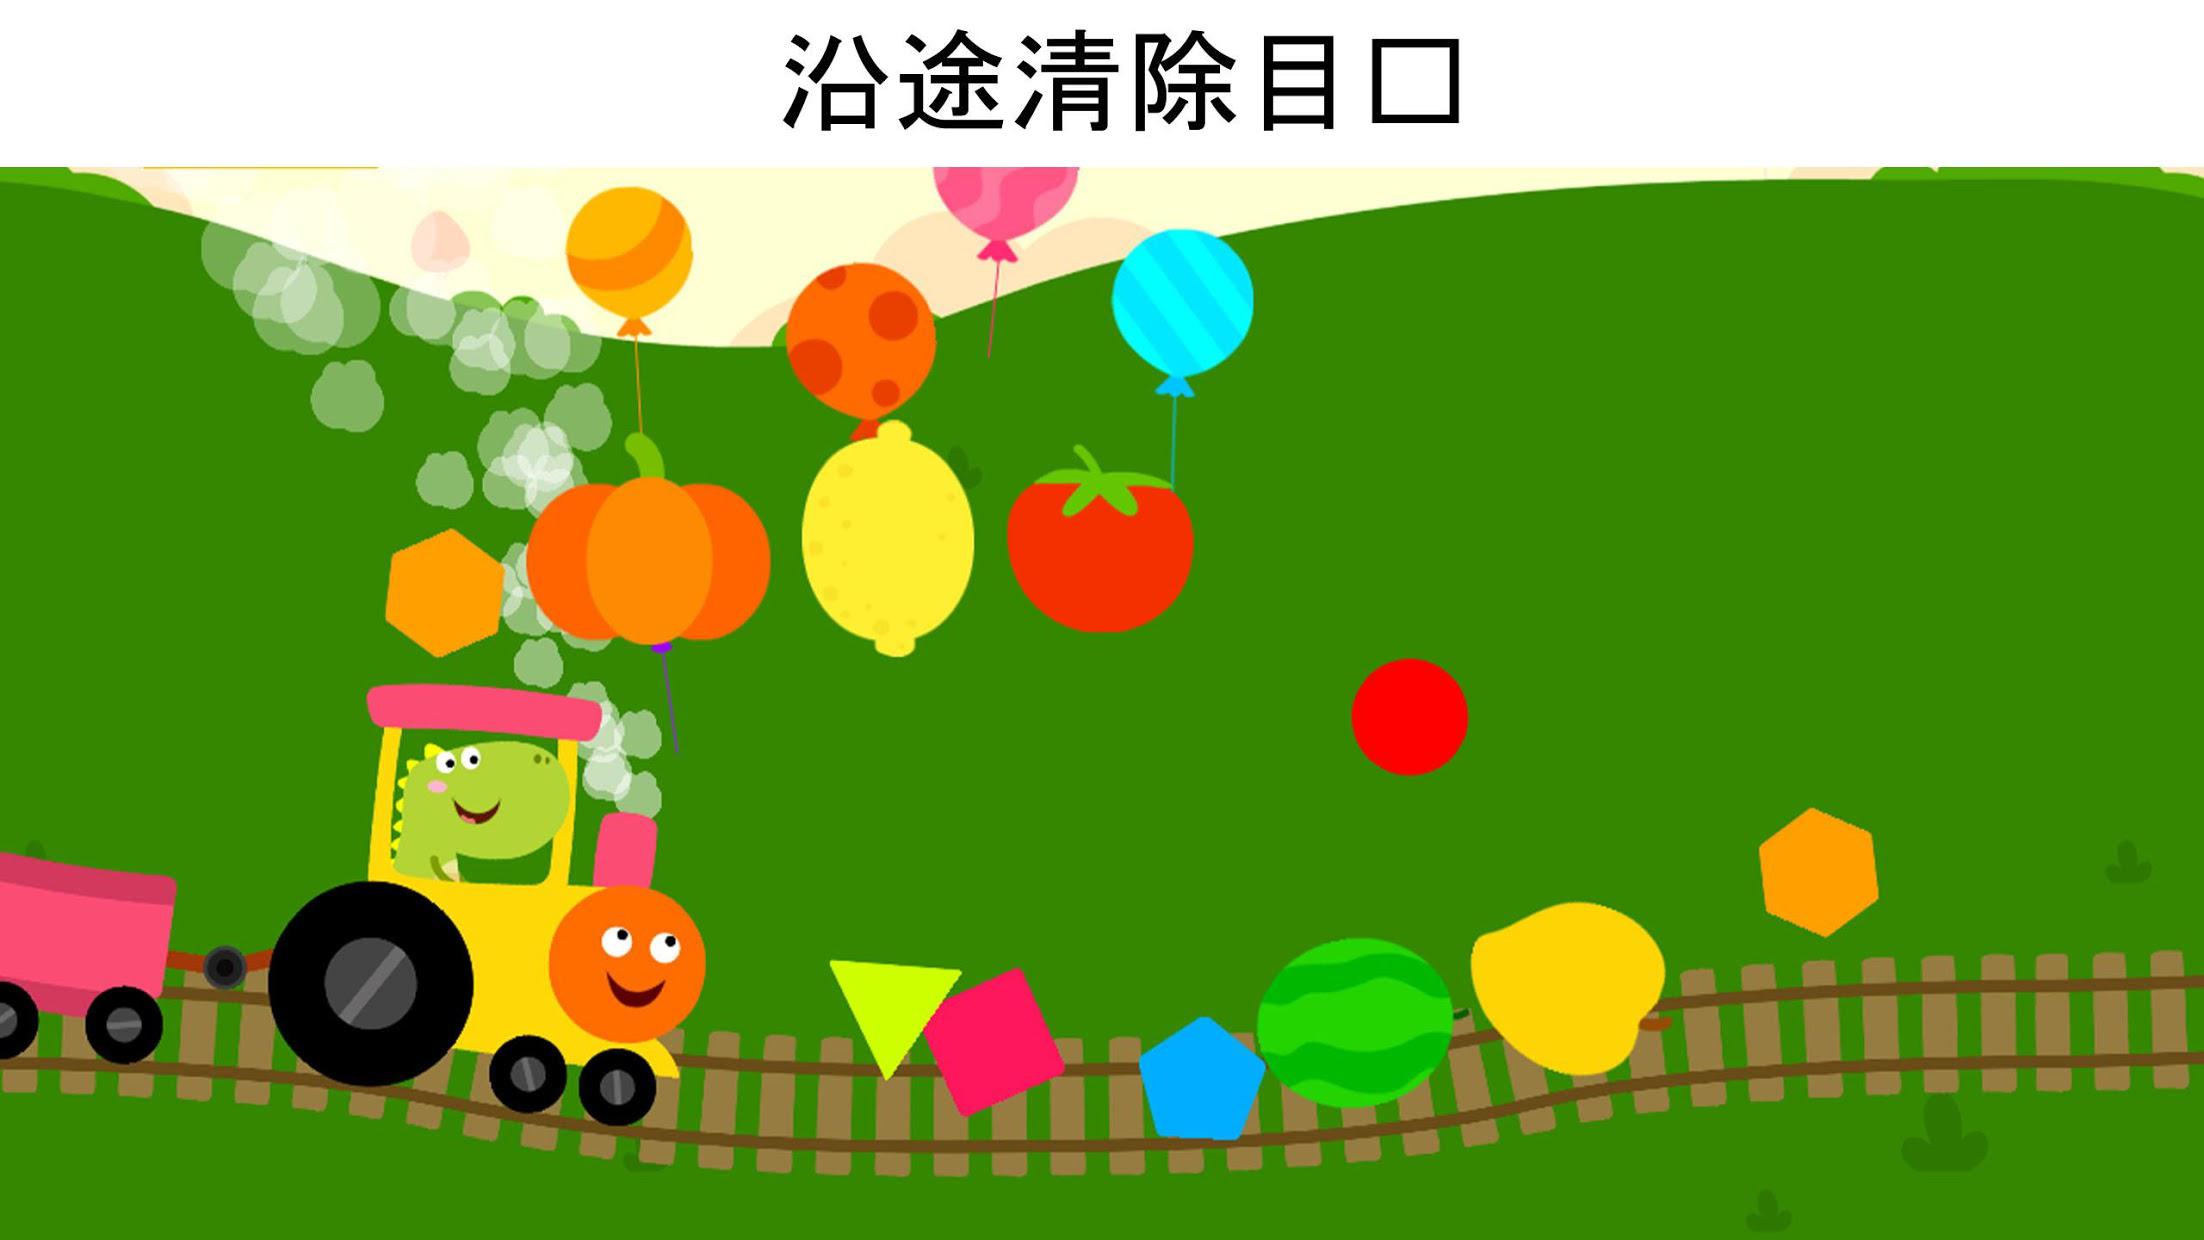 龙火车游戏--为小孩和学步儿童设计的龙游戏_截图_3